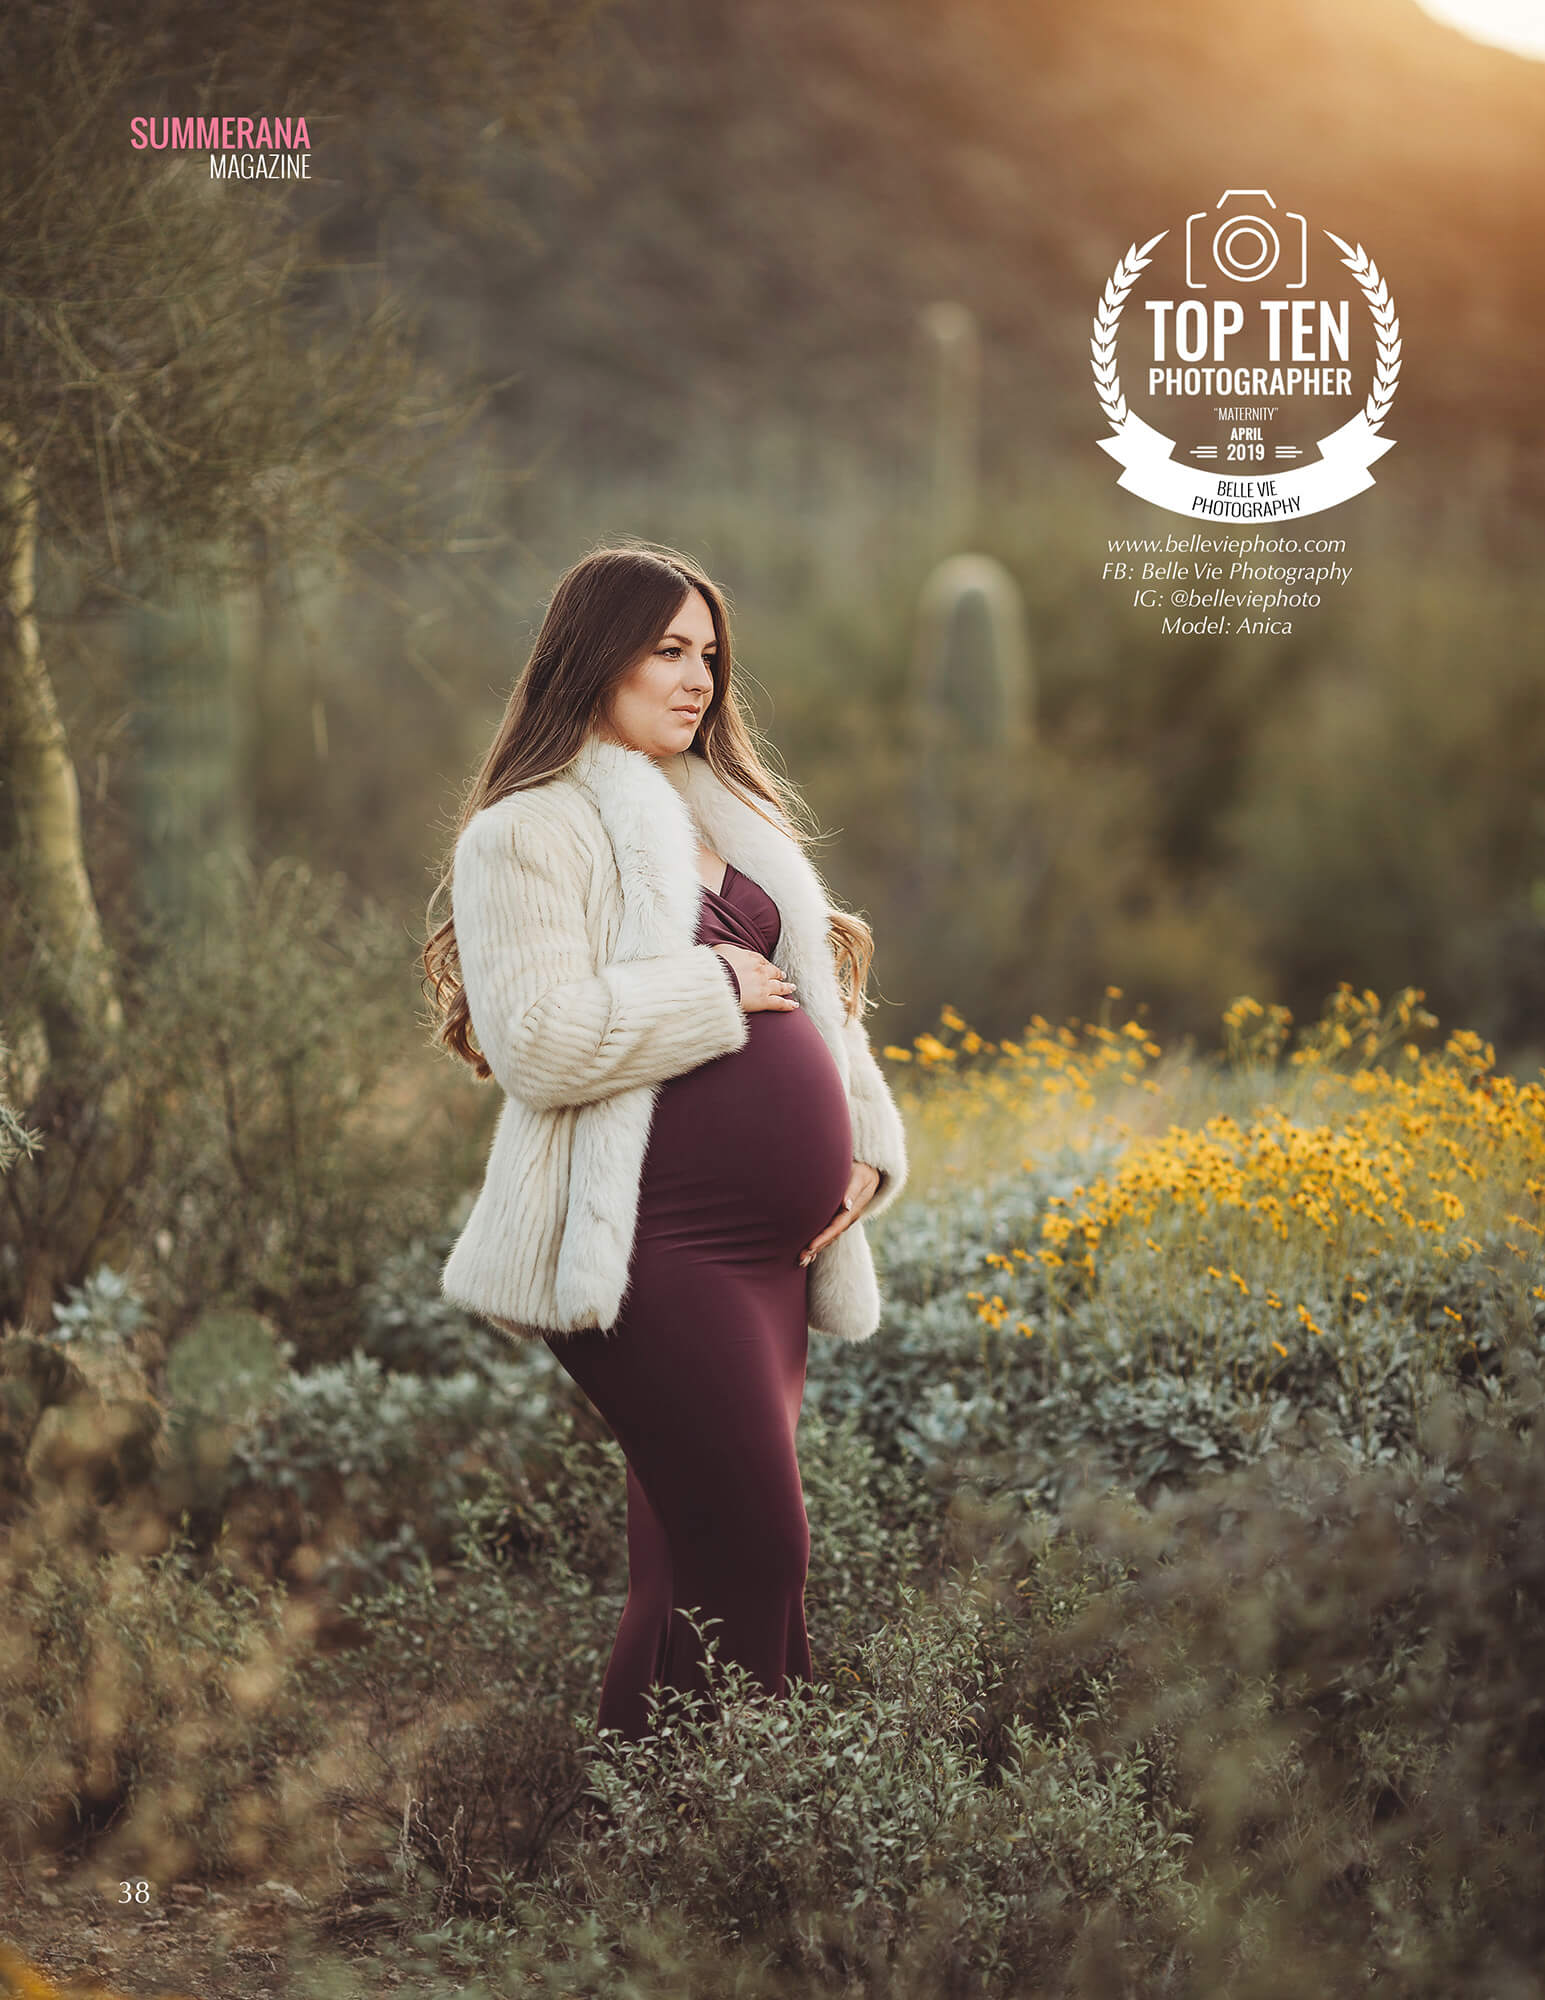 Top Photographer Summerana Magazine April 2019 a pregnant women standing amongst yellow desert flowers